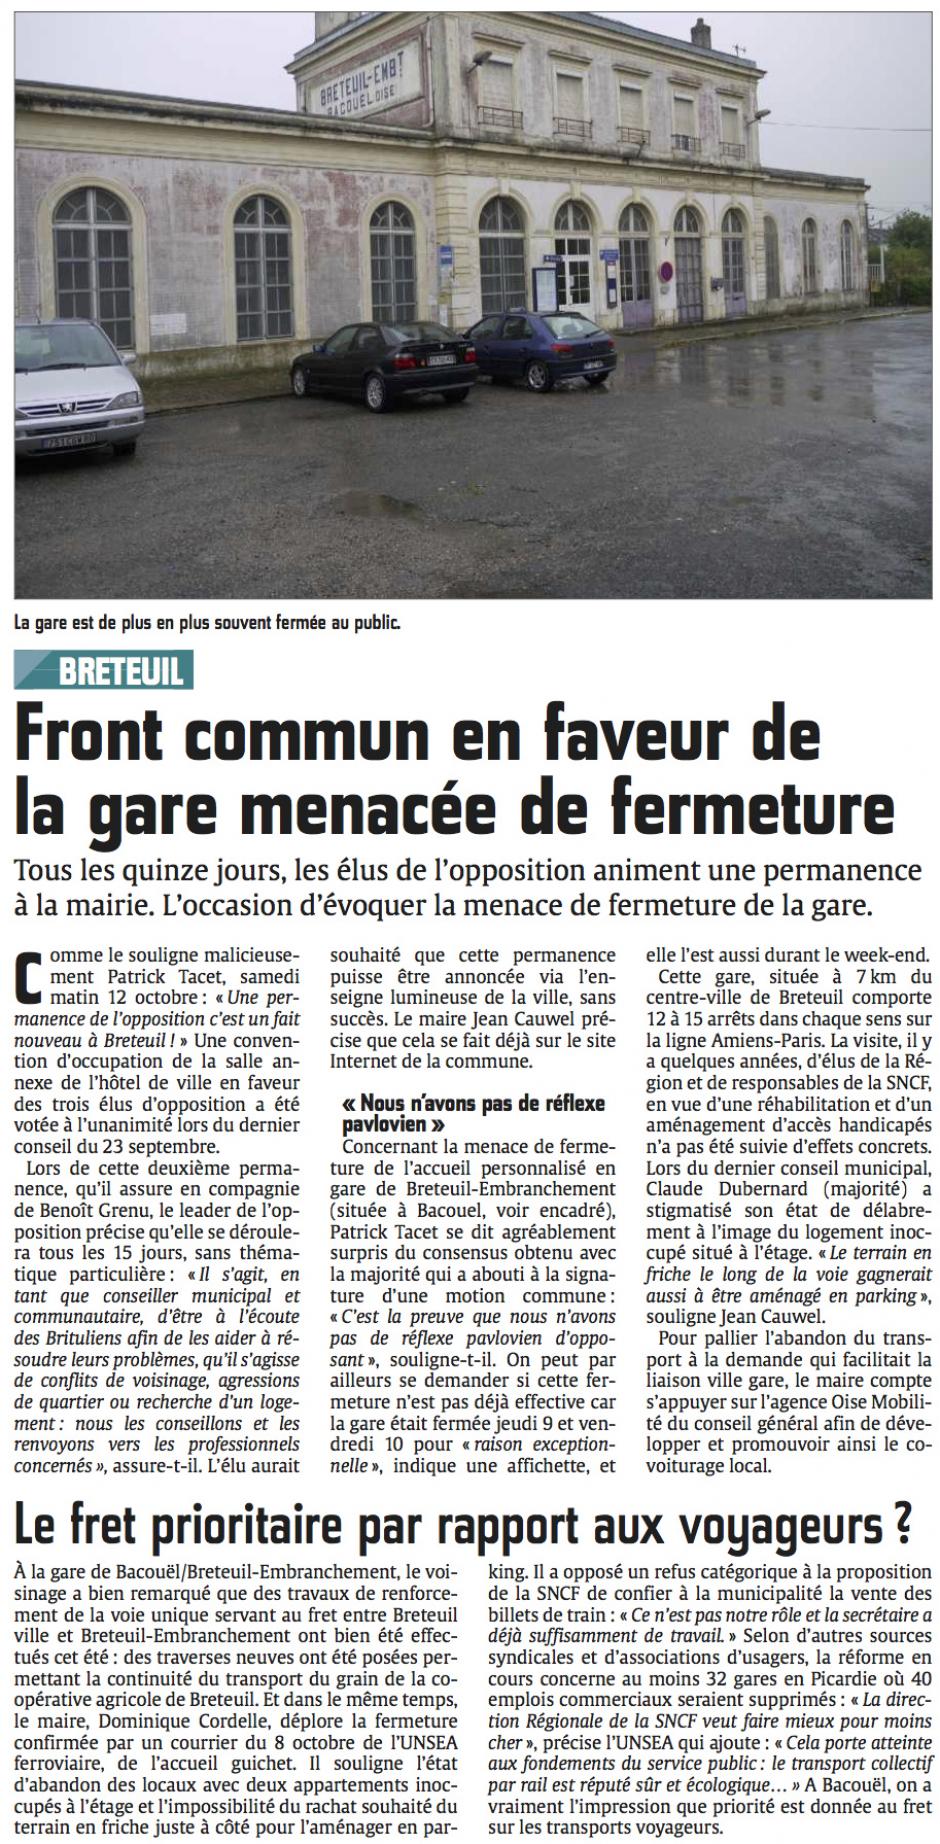 20141014-CP-Breteuil-Front commun en faveur de la gare menacée de fermeture